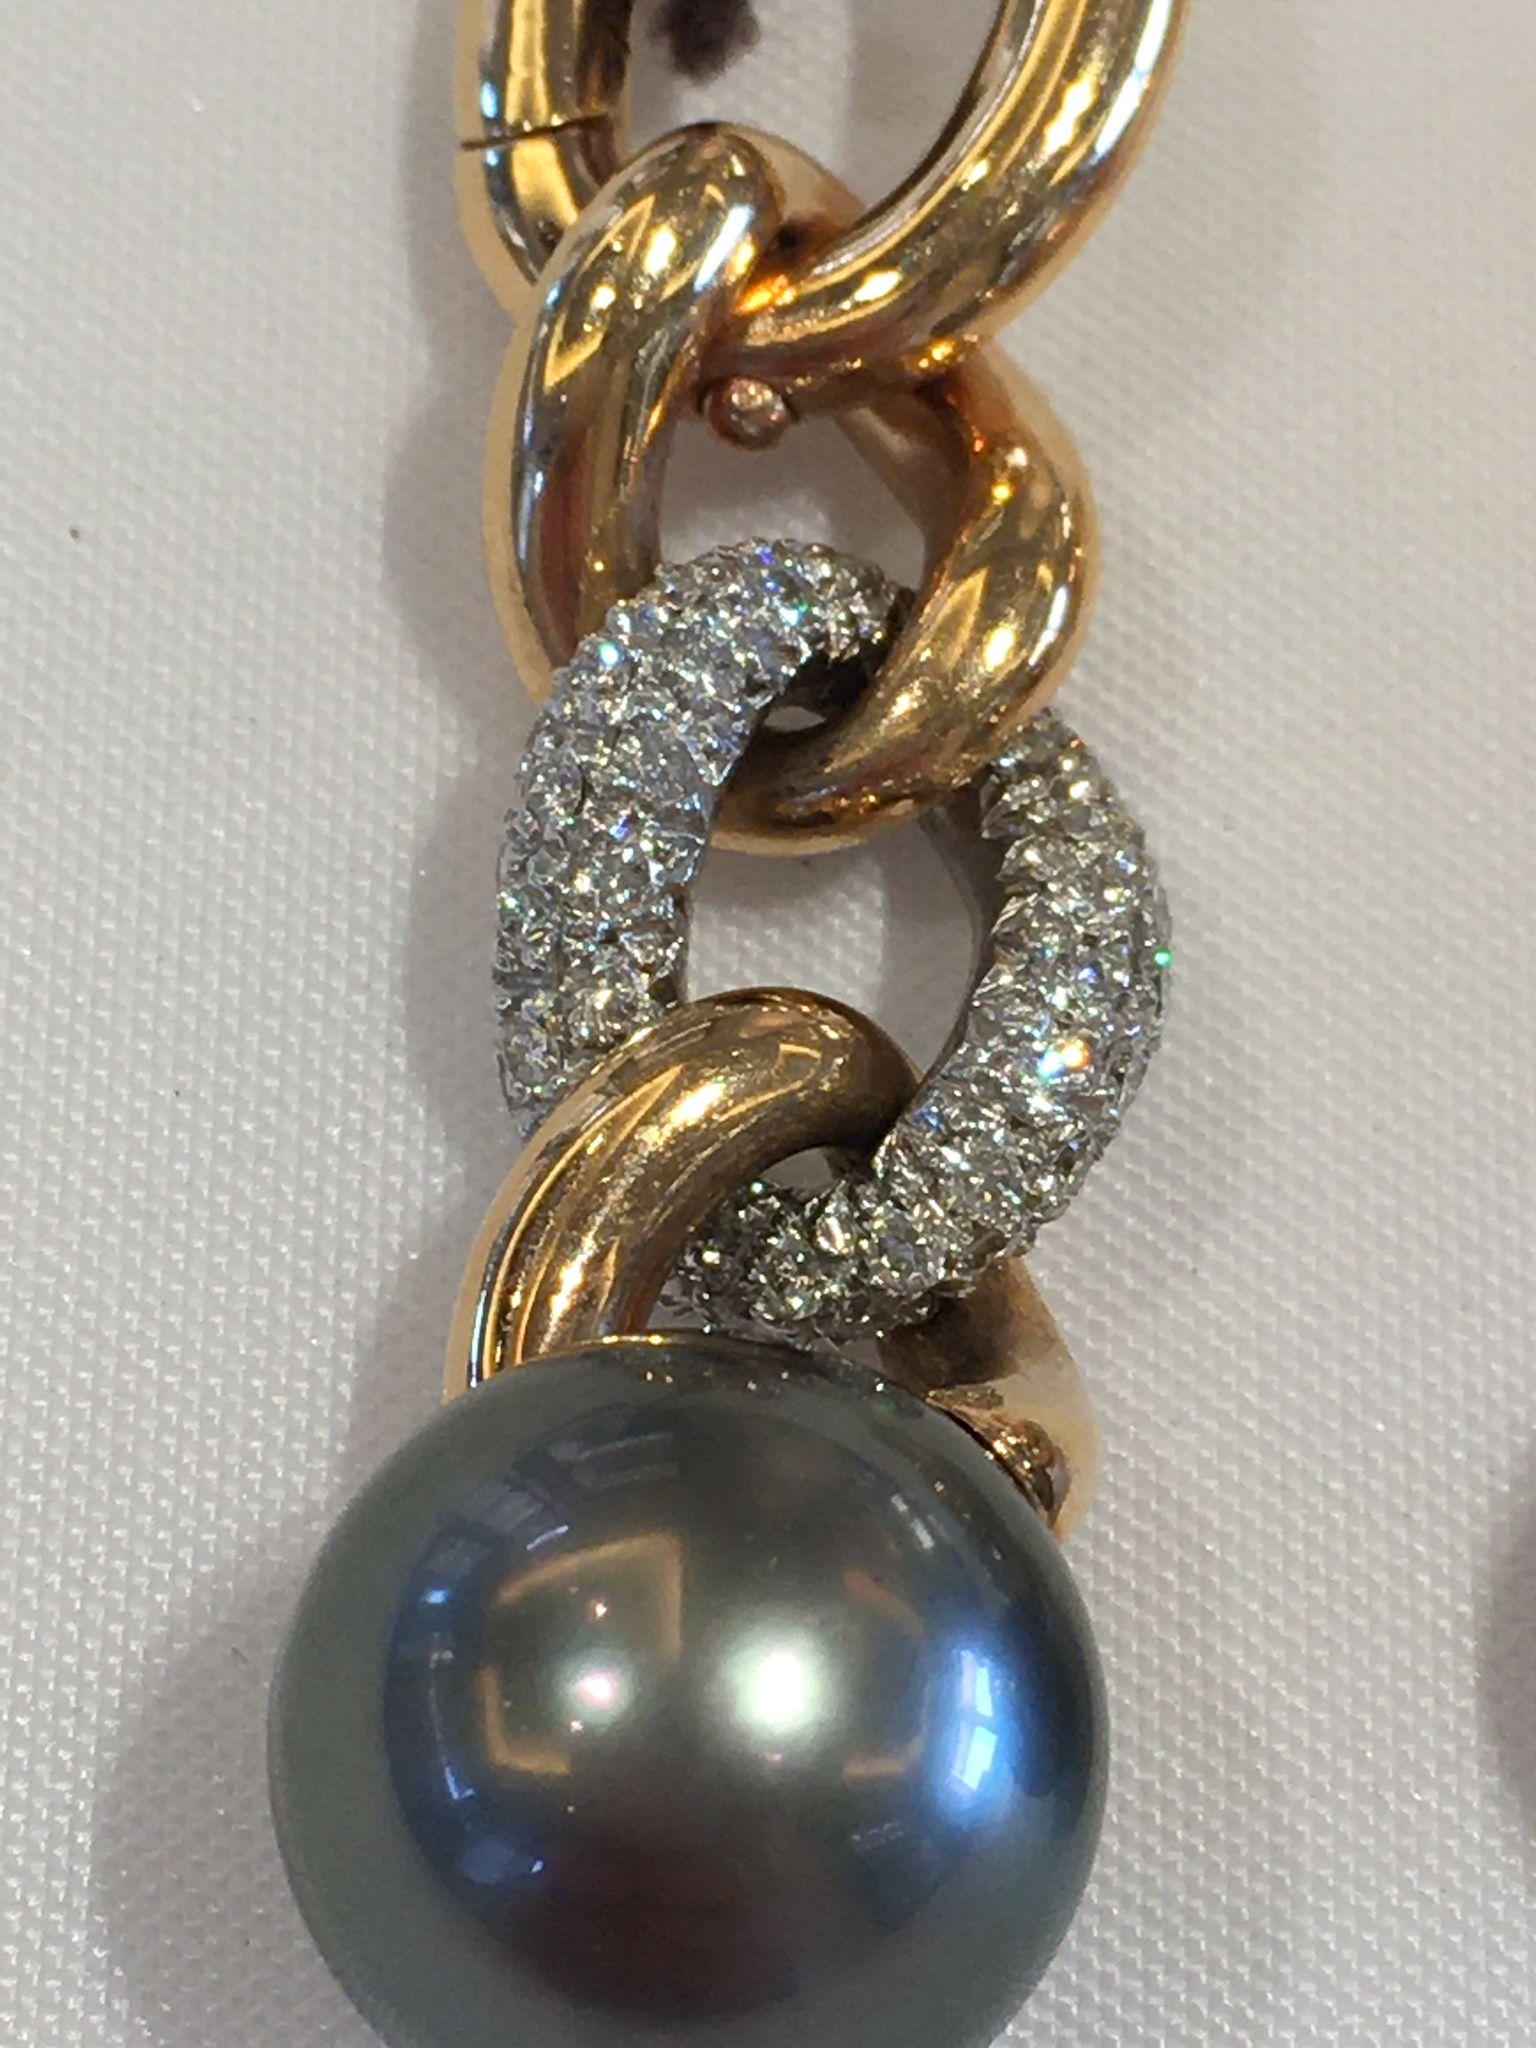 Une belle paire de perles noires de Tahiti en or rose 18kt avec des boucles d'oreilles en diamant par Mikimoto.
Ce produit étonnant est livré avec notre belle boîte et notre garantie.

Neuf !